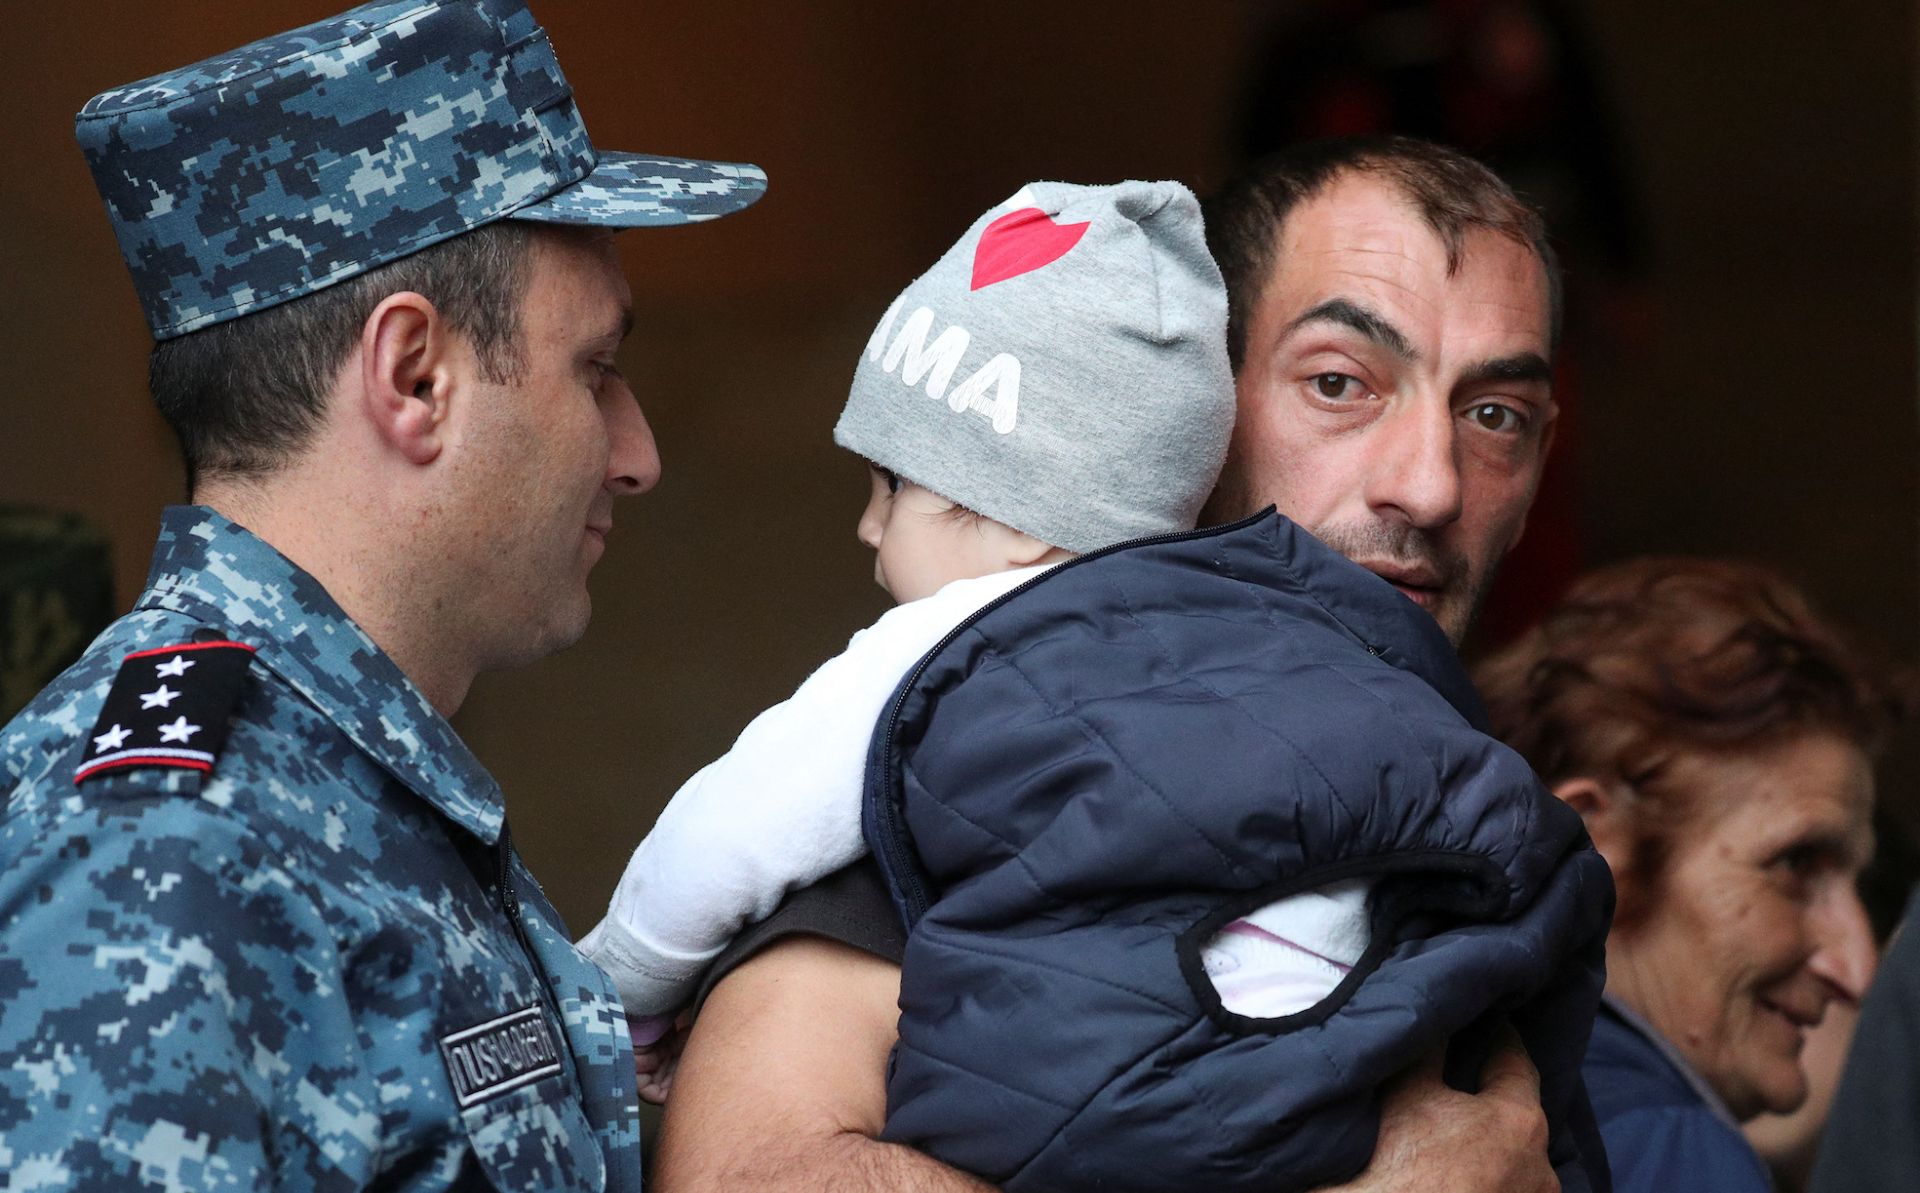 Եվրամիությունը կոչ է անում Ադրբեջանին ապահովել Ղարաբաղի հայերի մարդու իրավունքներն ու անվտանգությունը